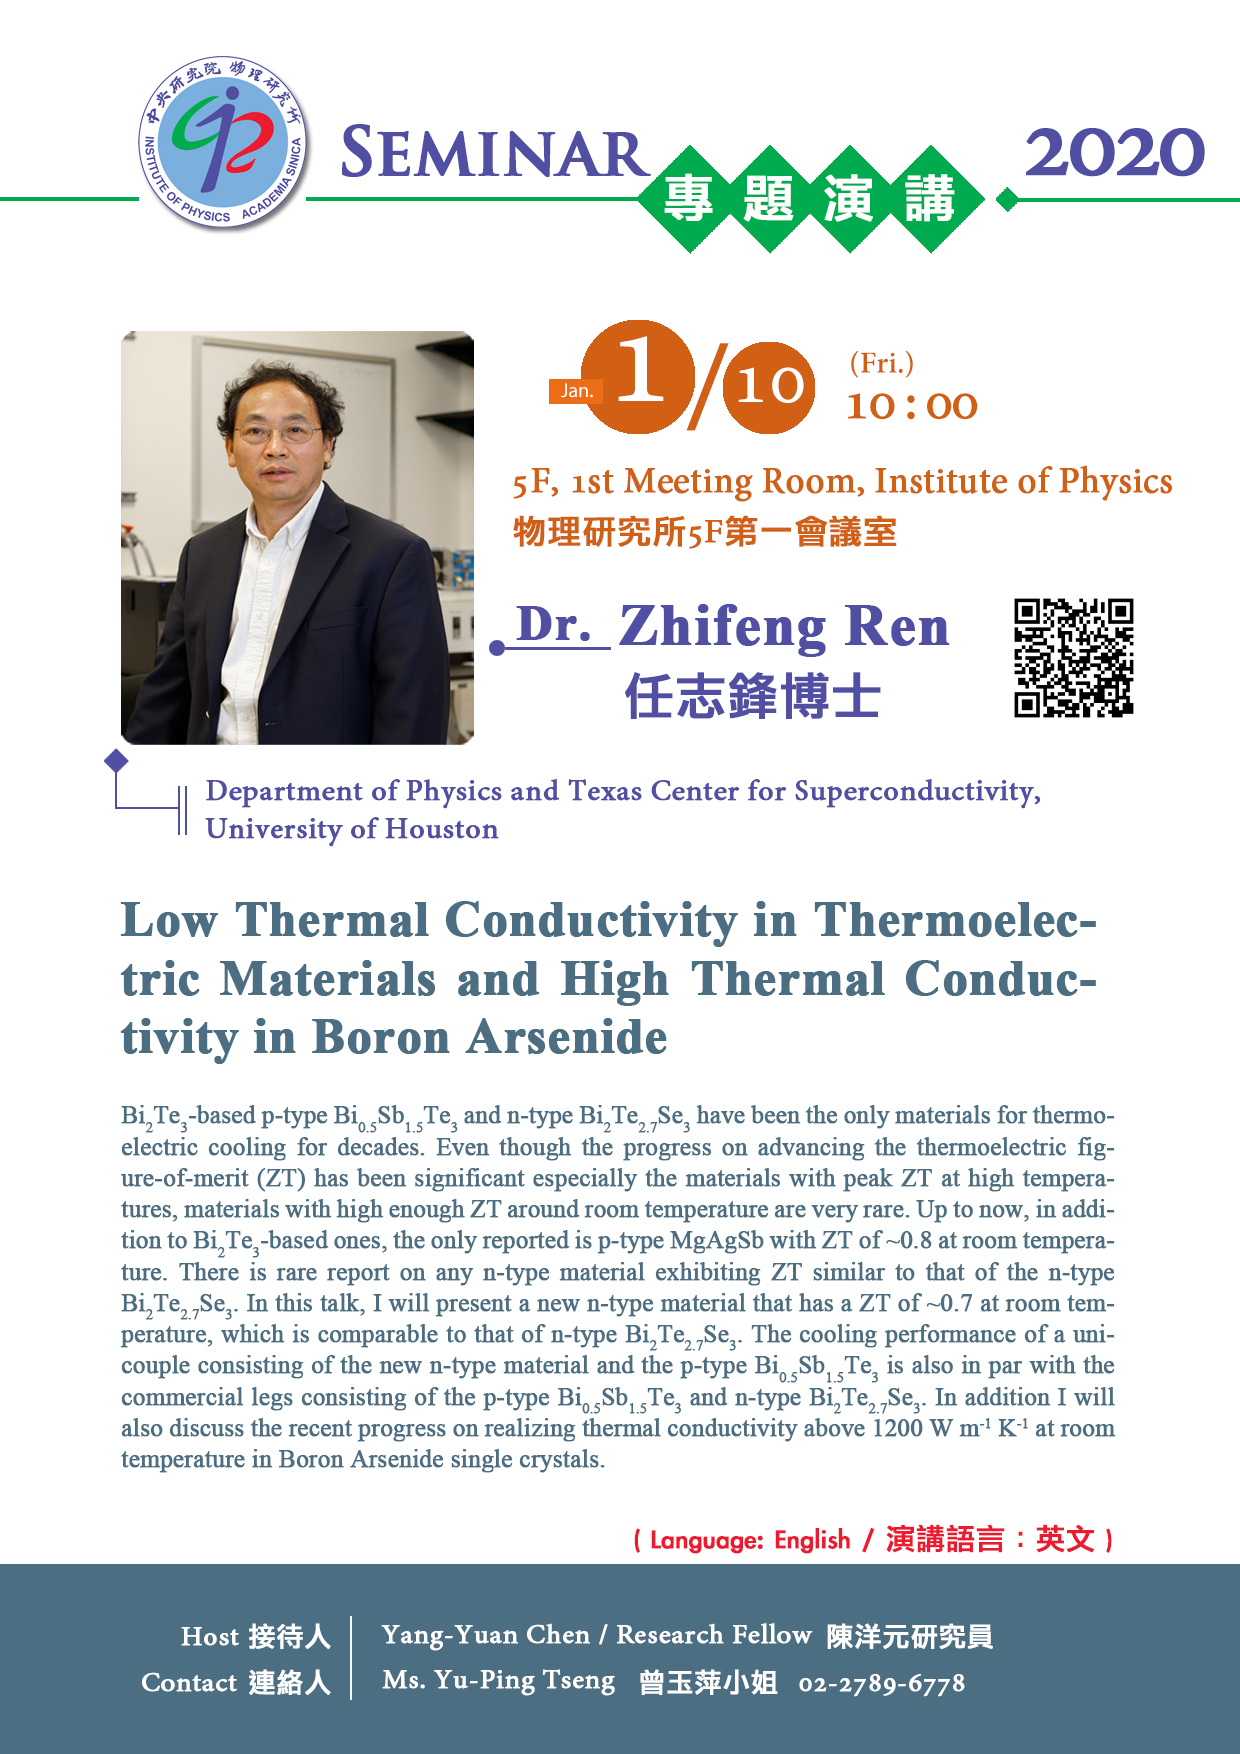 物理所通俗演講：Low Thermal Conductivity in Thermoelectric Materials and High Thermal Conductivity in Boron Arsenide